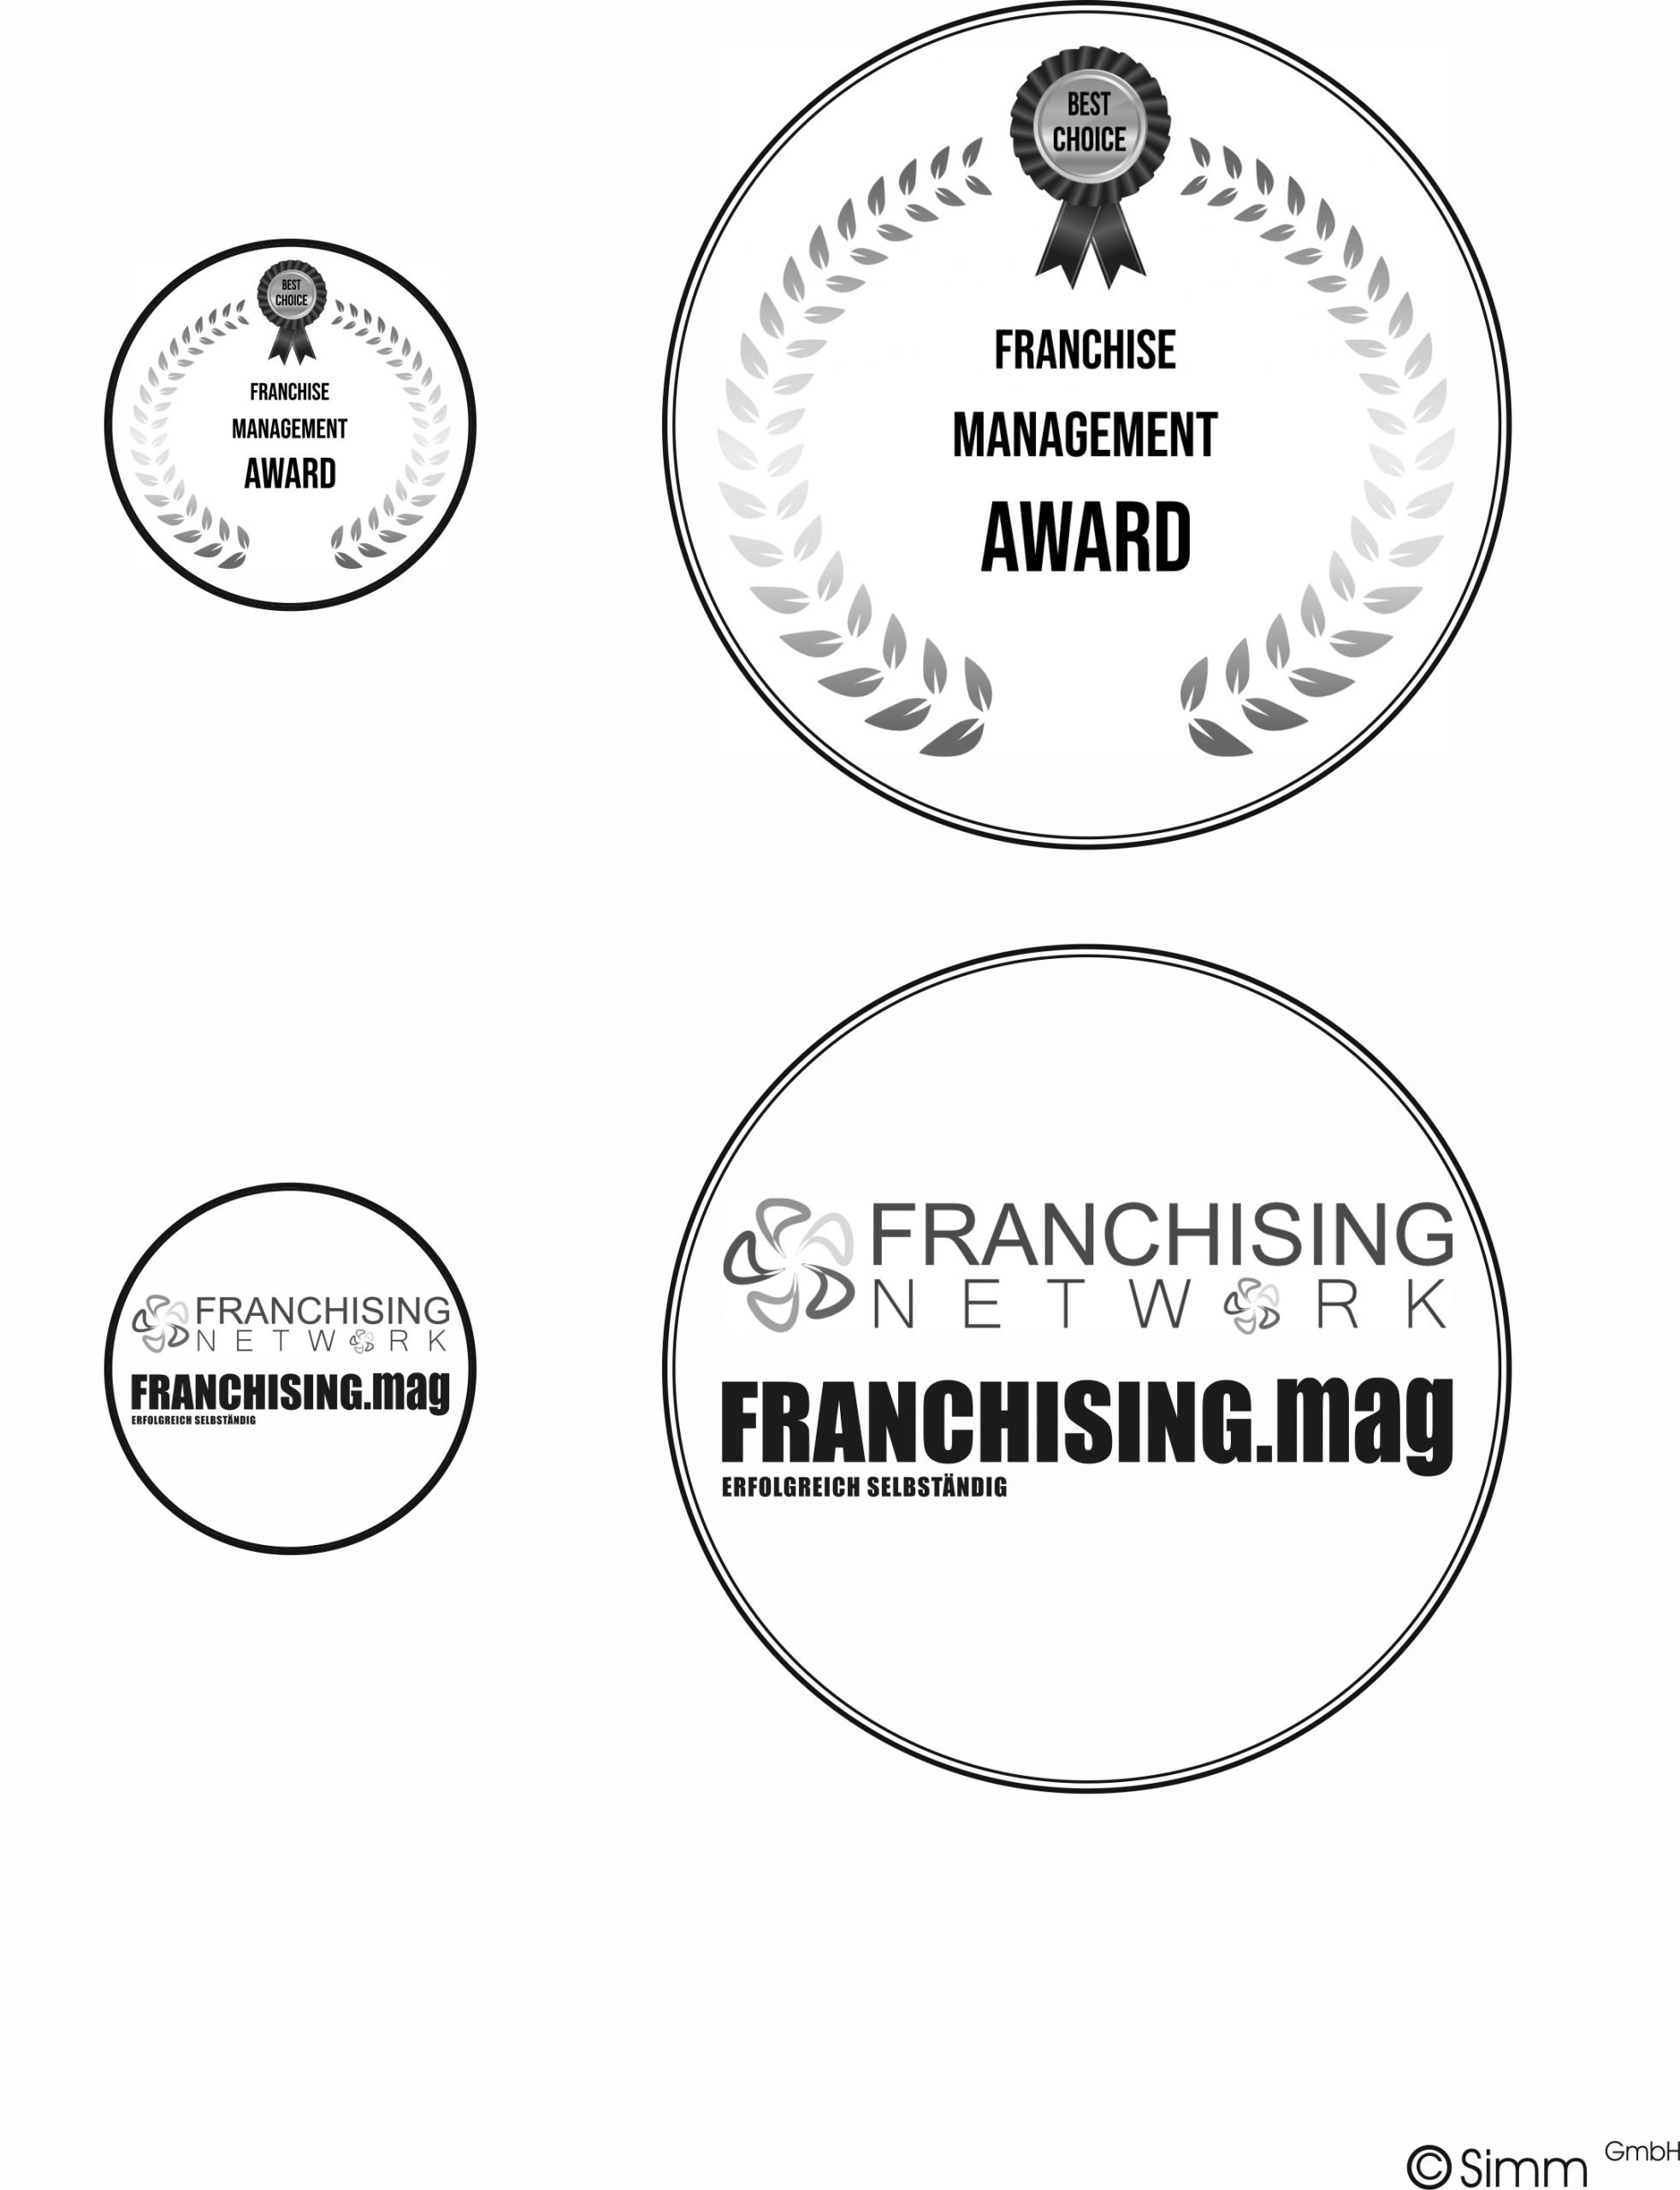 Franchise Management Award 